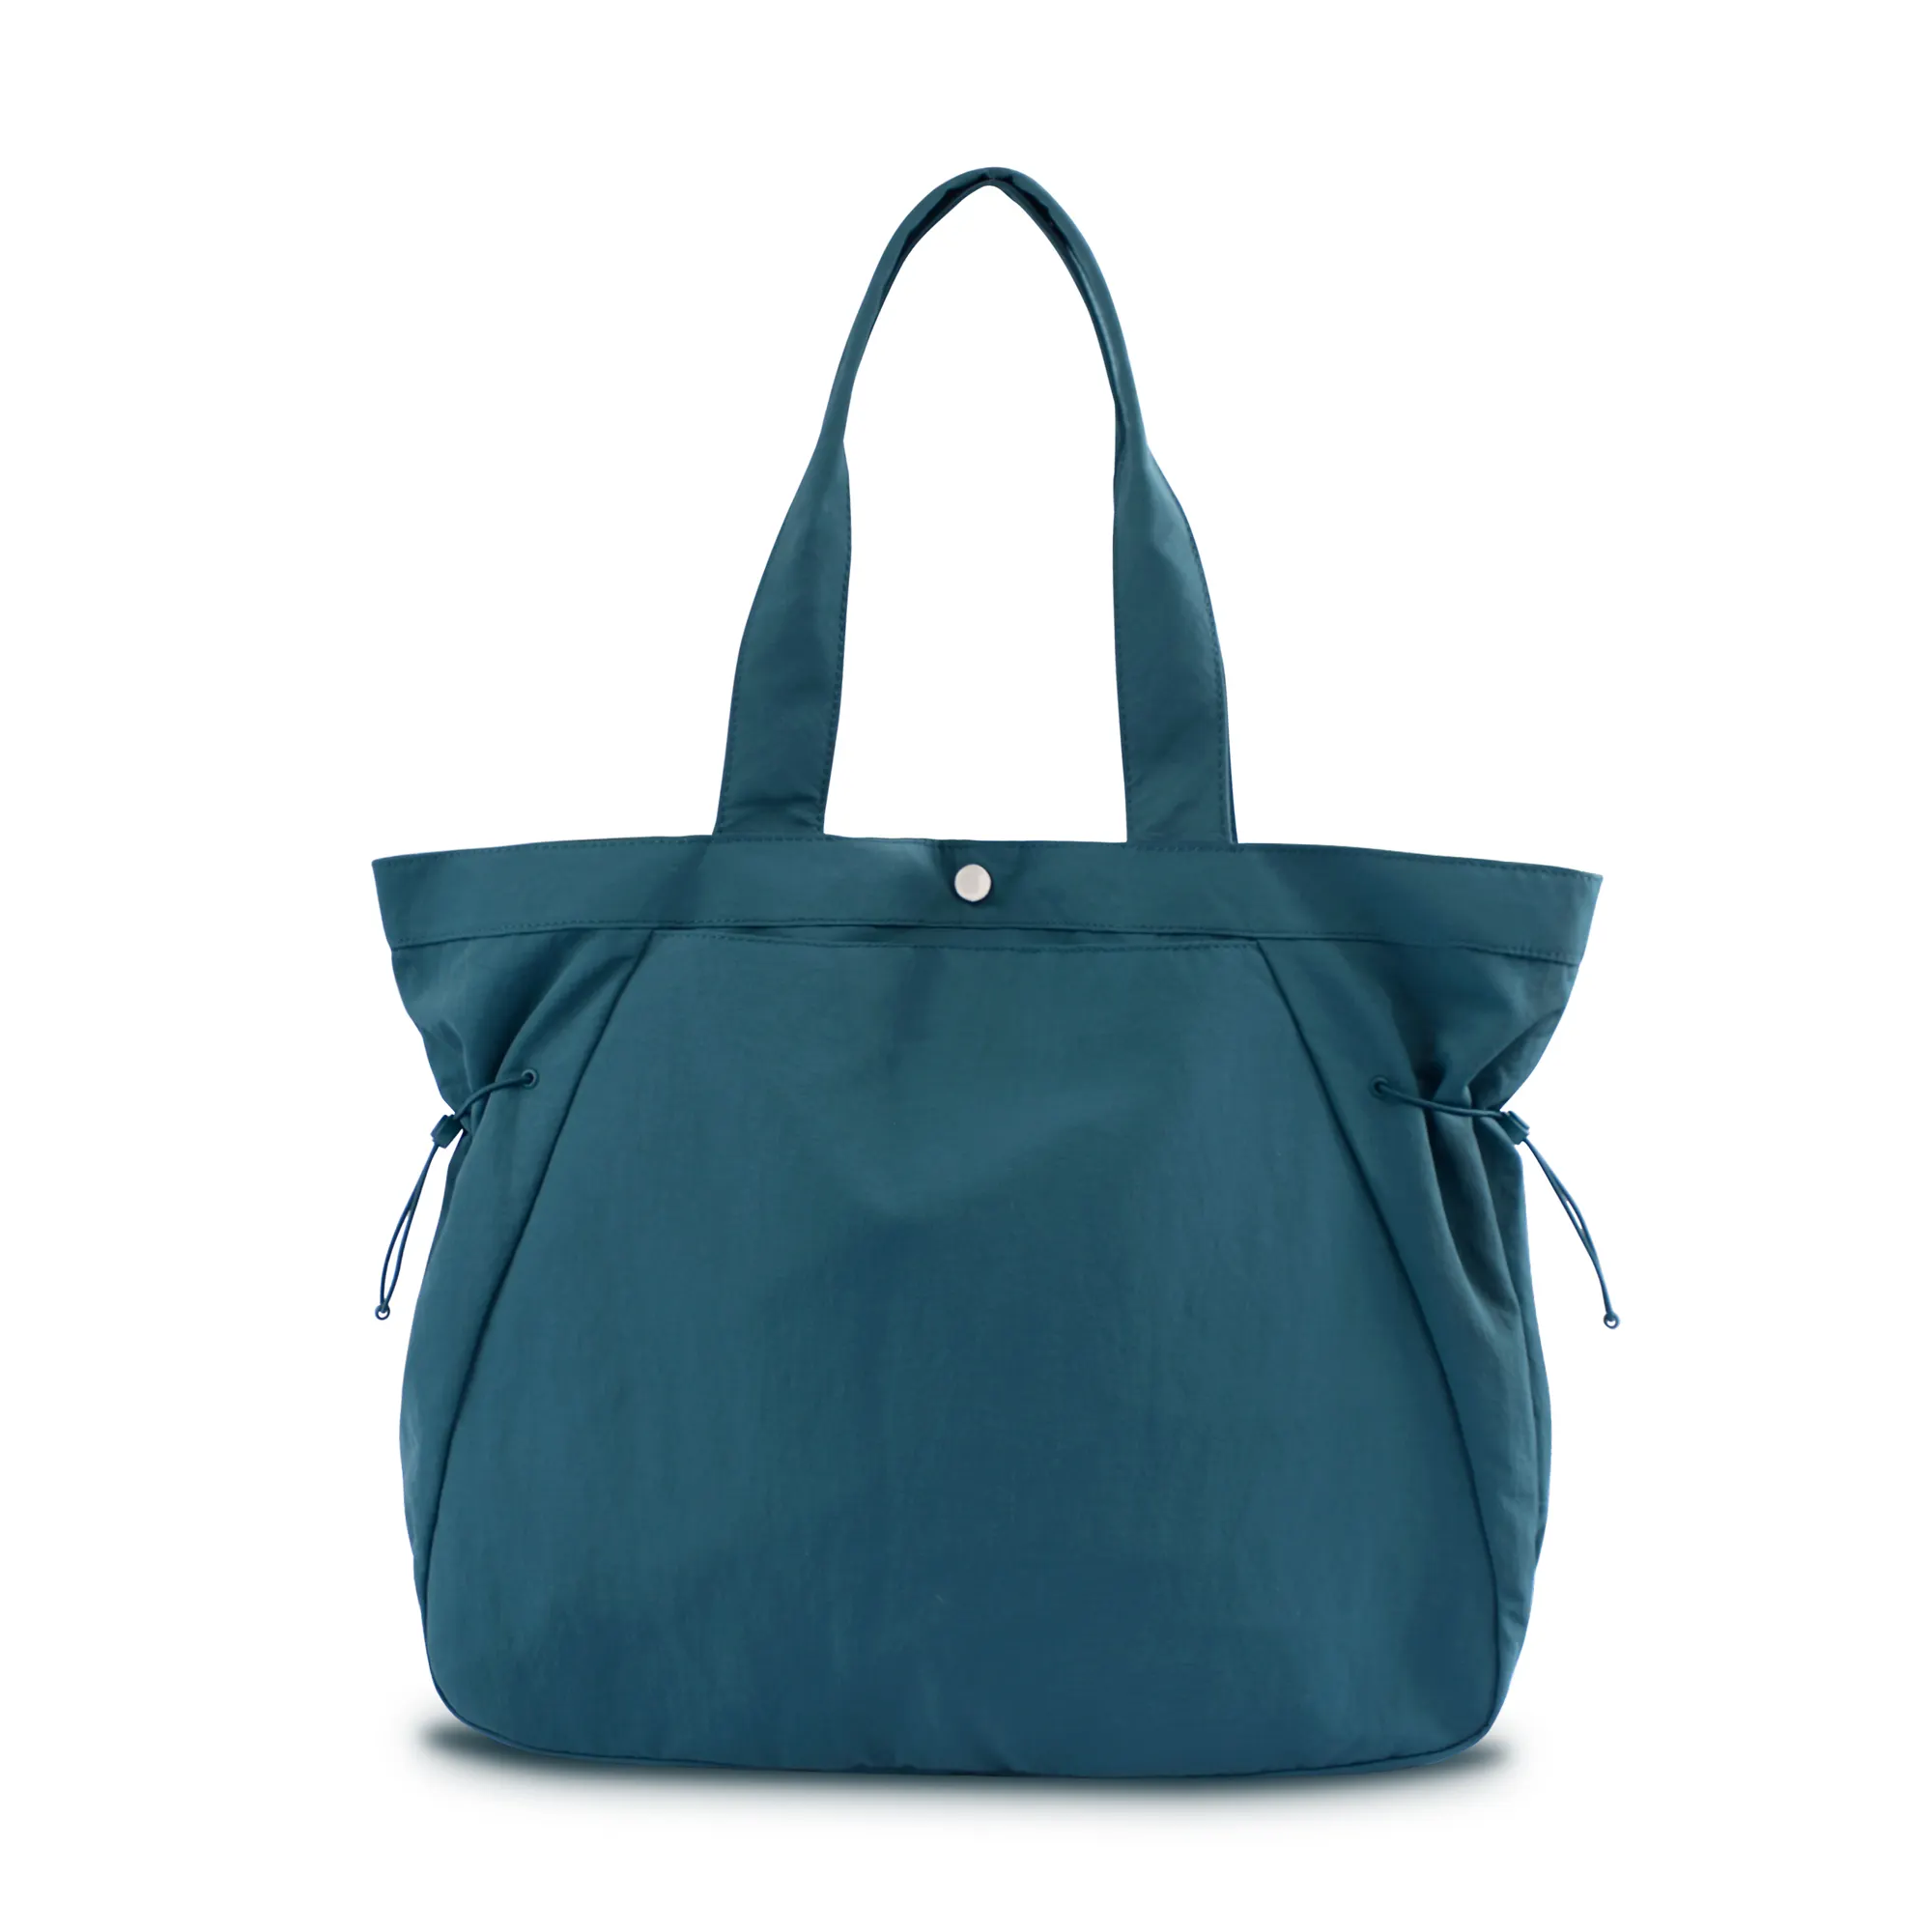 Tas belanja samping mudah 18l tas bahu ringan tas jinjing wanita untuk belanja latihan perjalanan pantai